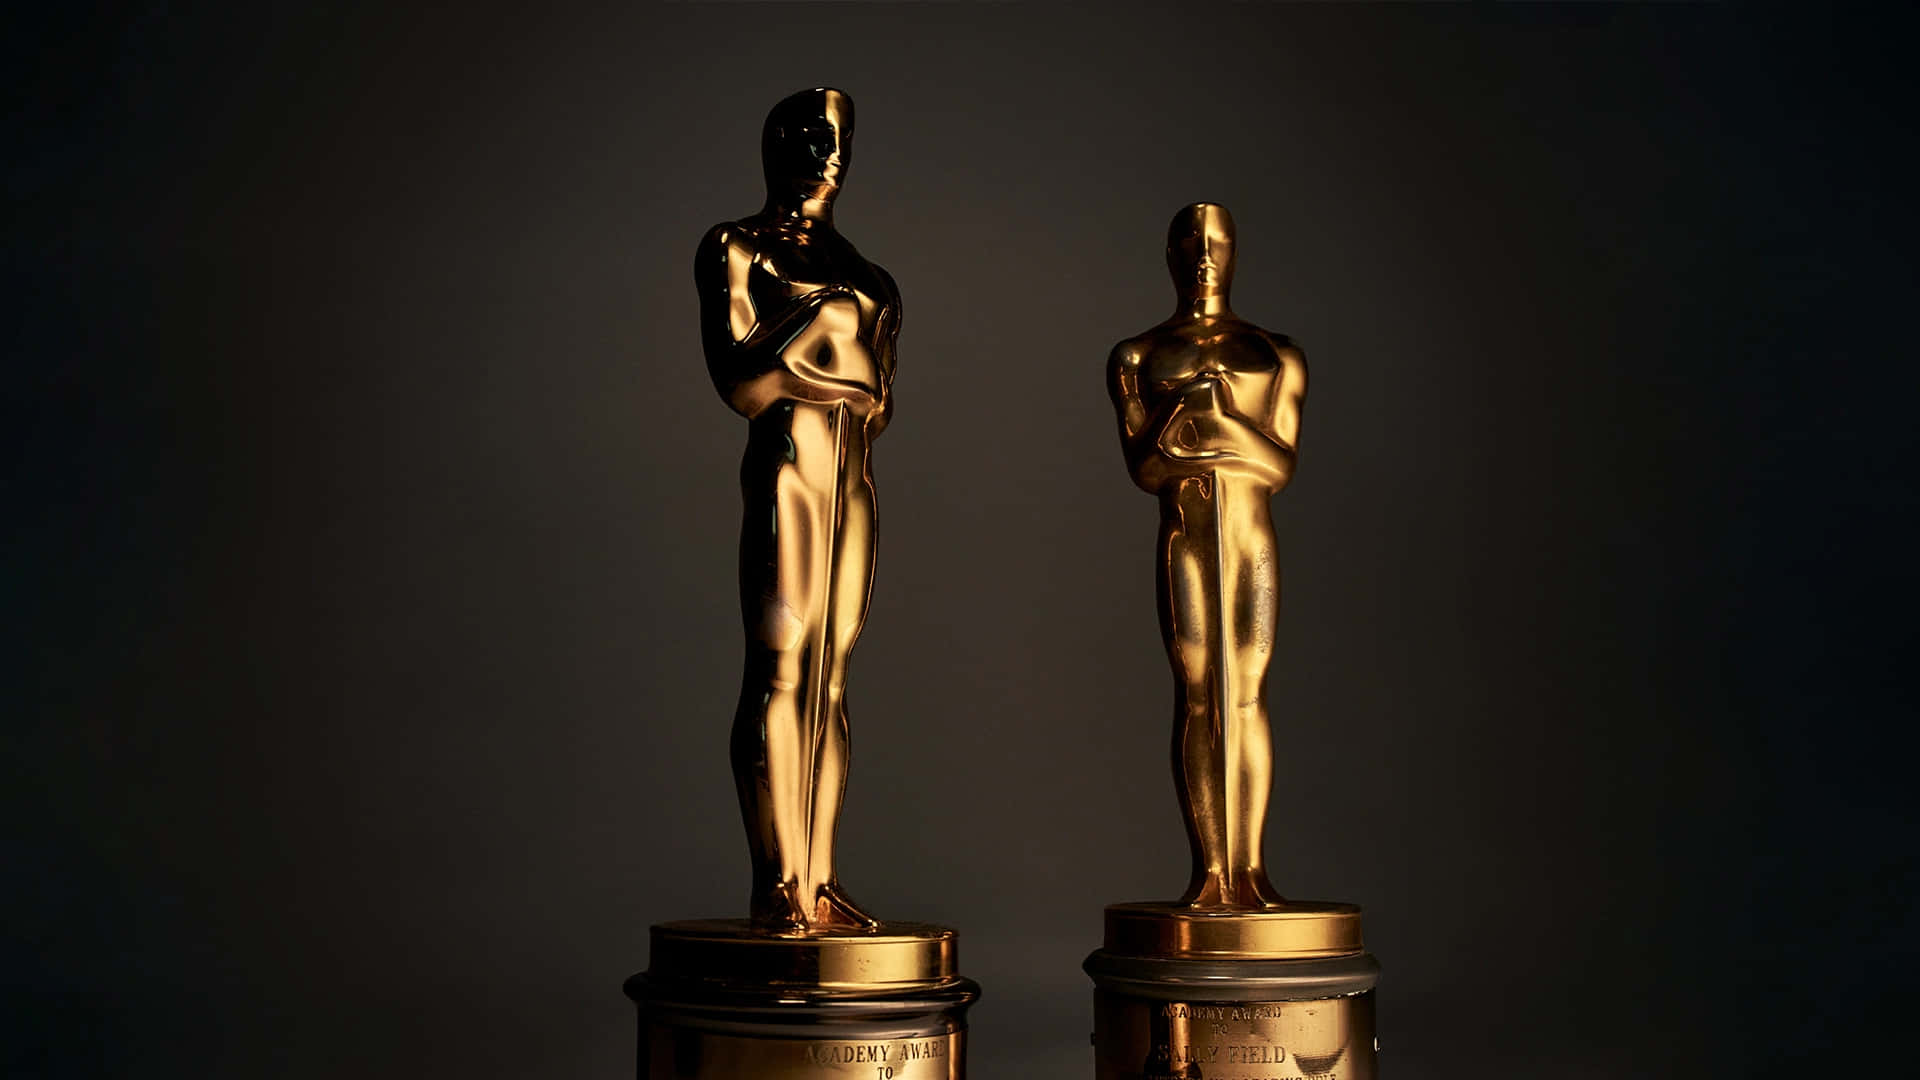 Losóscar Son Premios Anuales Otorgados Por La Academia De Las Artes Y Las Ciencias Cinematográficas De Estados Unidos. Estos Premios Reconocen La Excelencia En La Industria Del Cine. Fondo de pantalla